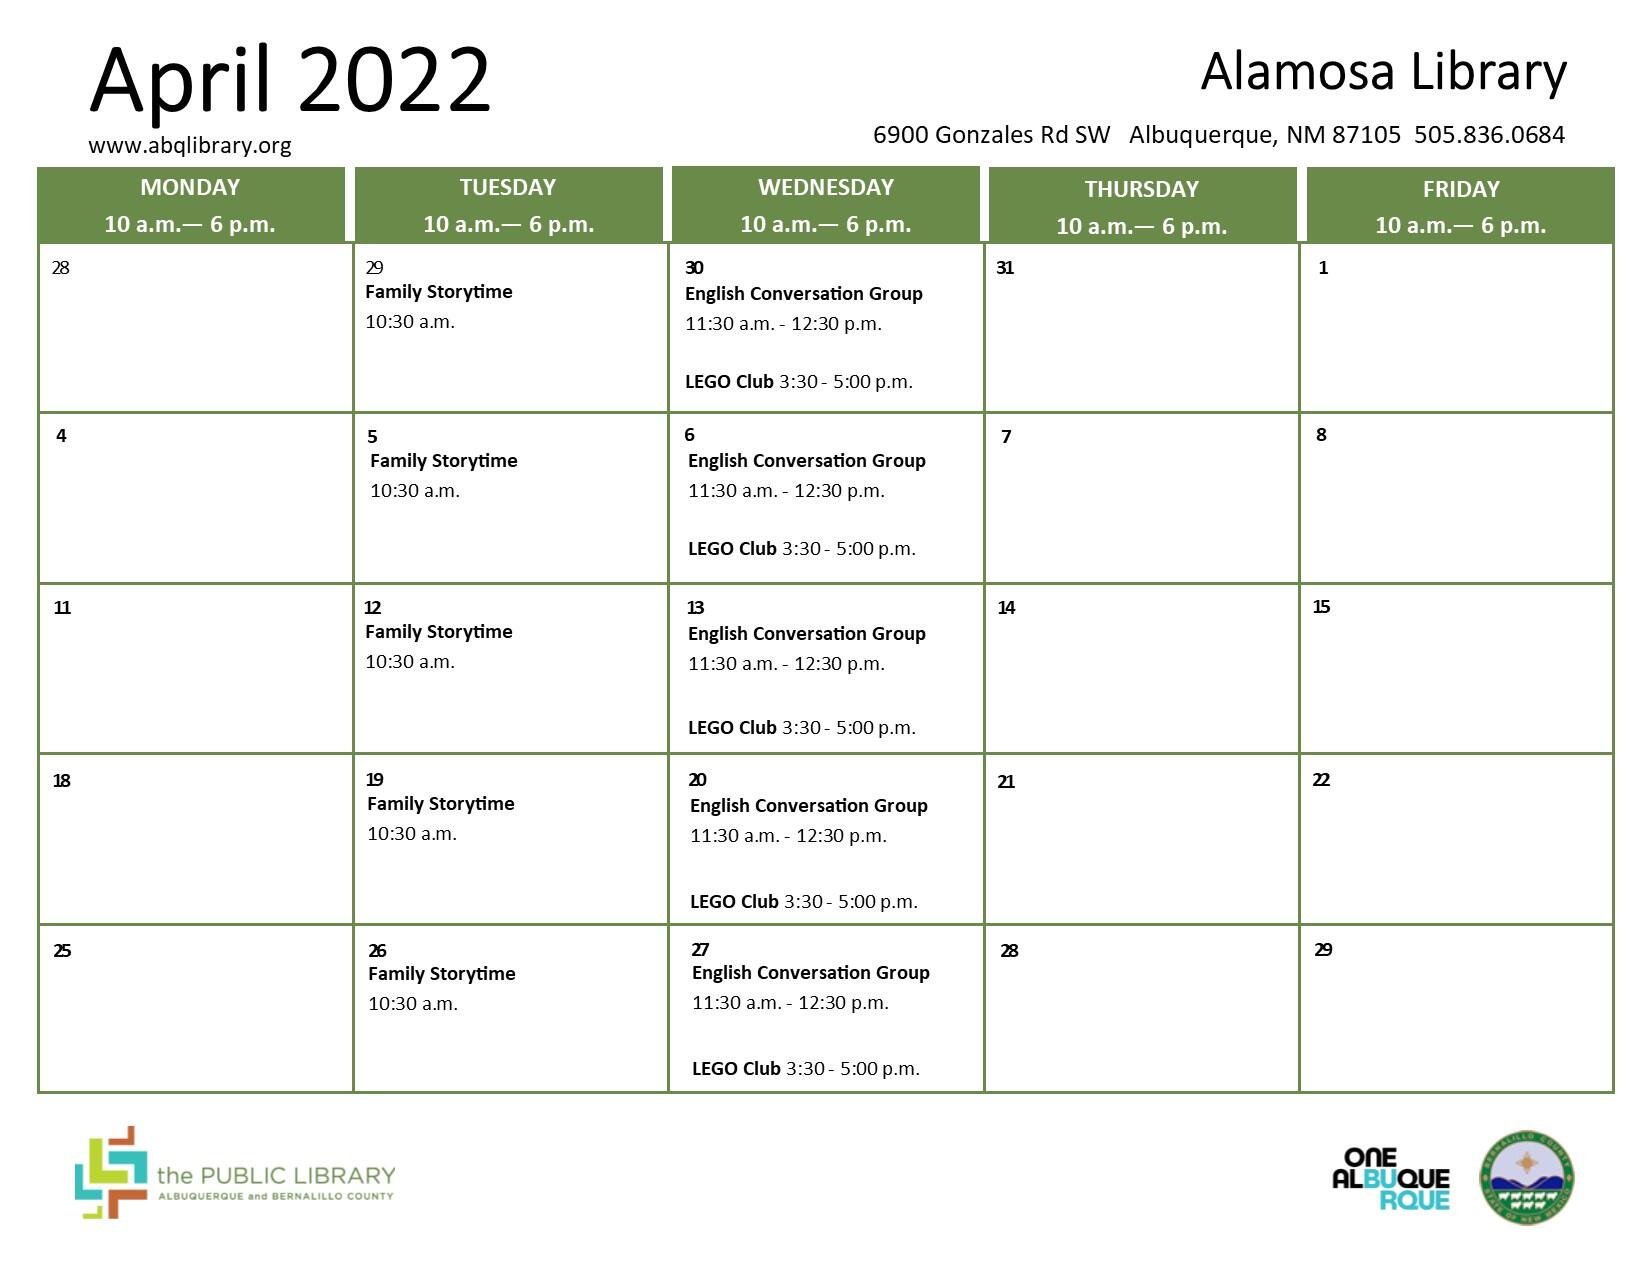 Alamosa Library, April 2022 Calendar & Programs (City of Albuquerque